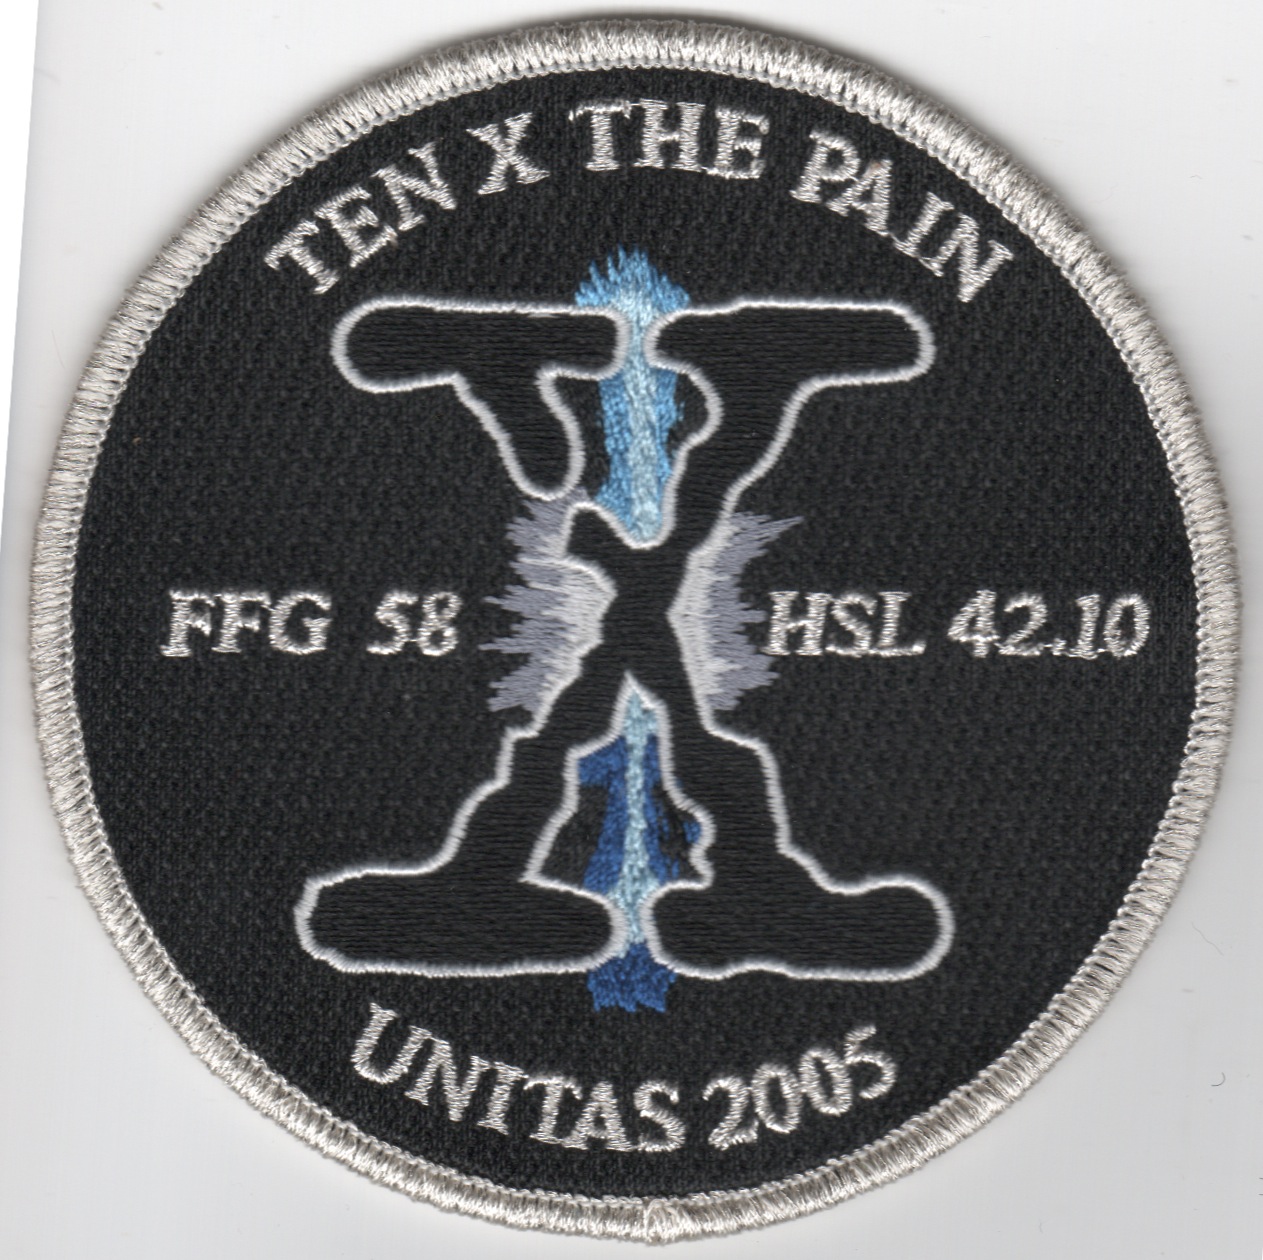 HSL-42 '10 X Pain' Patch (Black)